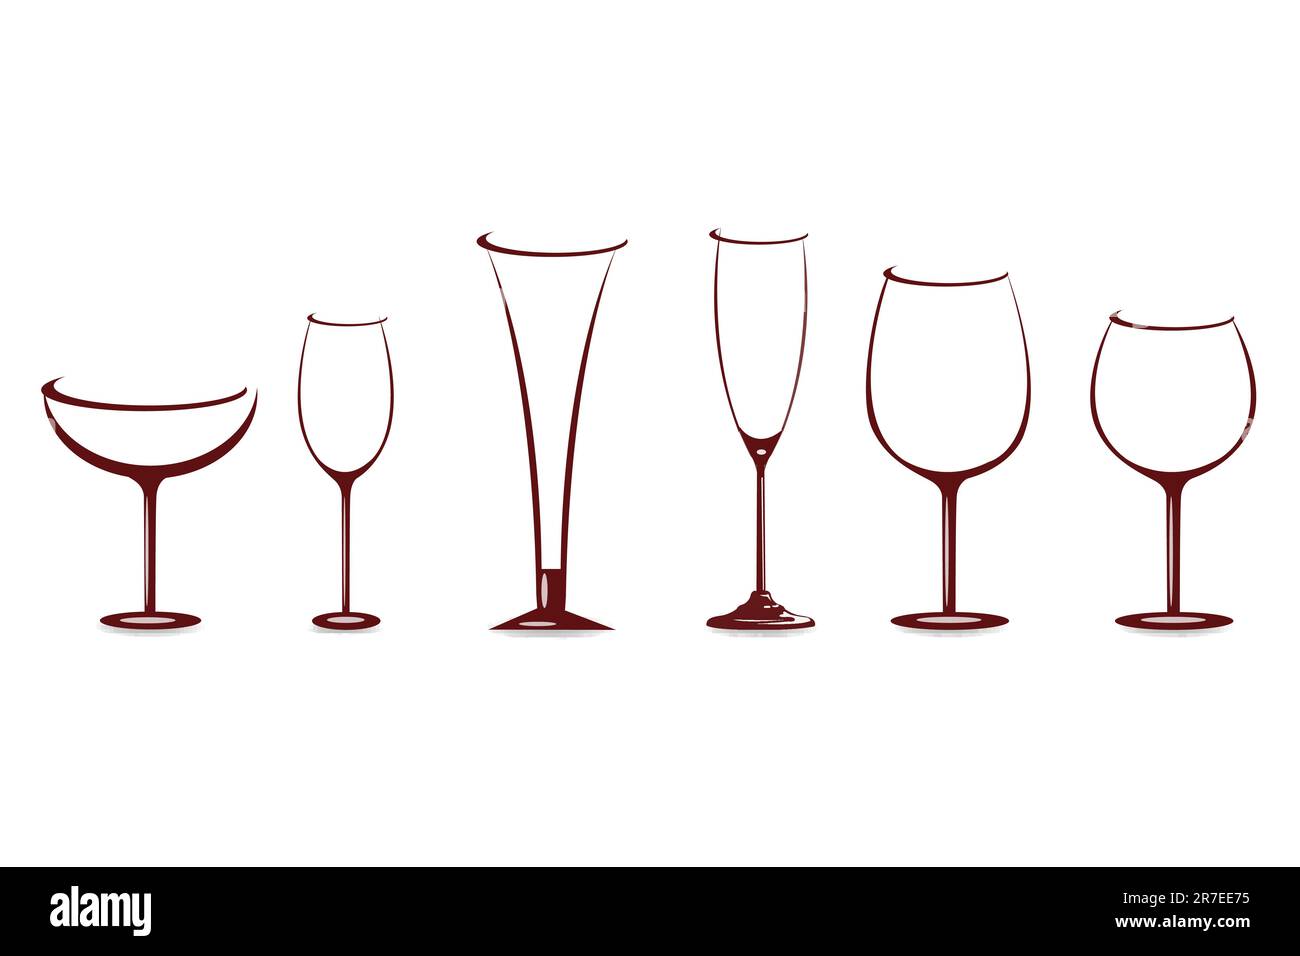 Illustrazione di forme di bicchieri di vino su sfondo bianco Illustrazione Vettoriale